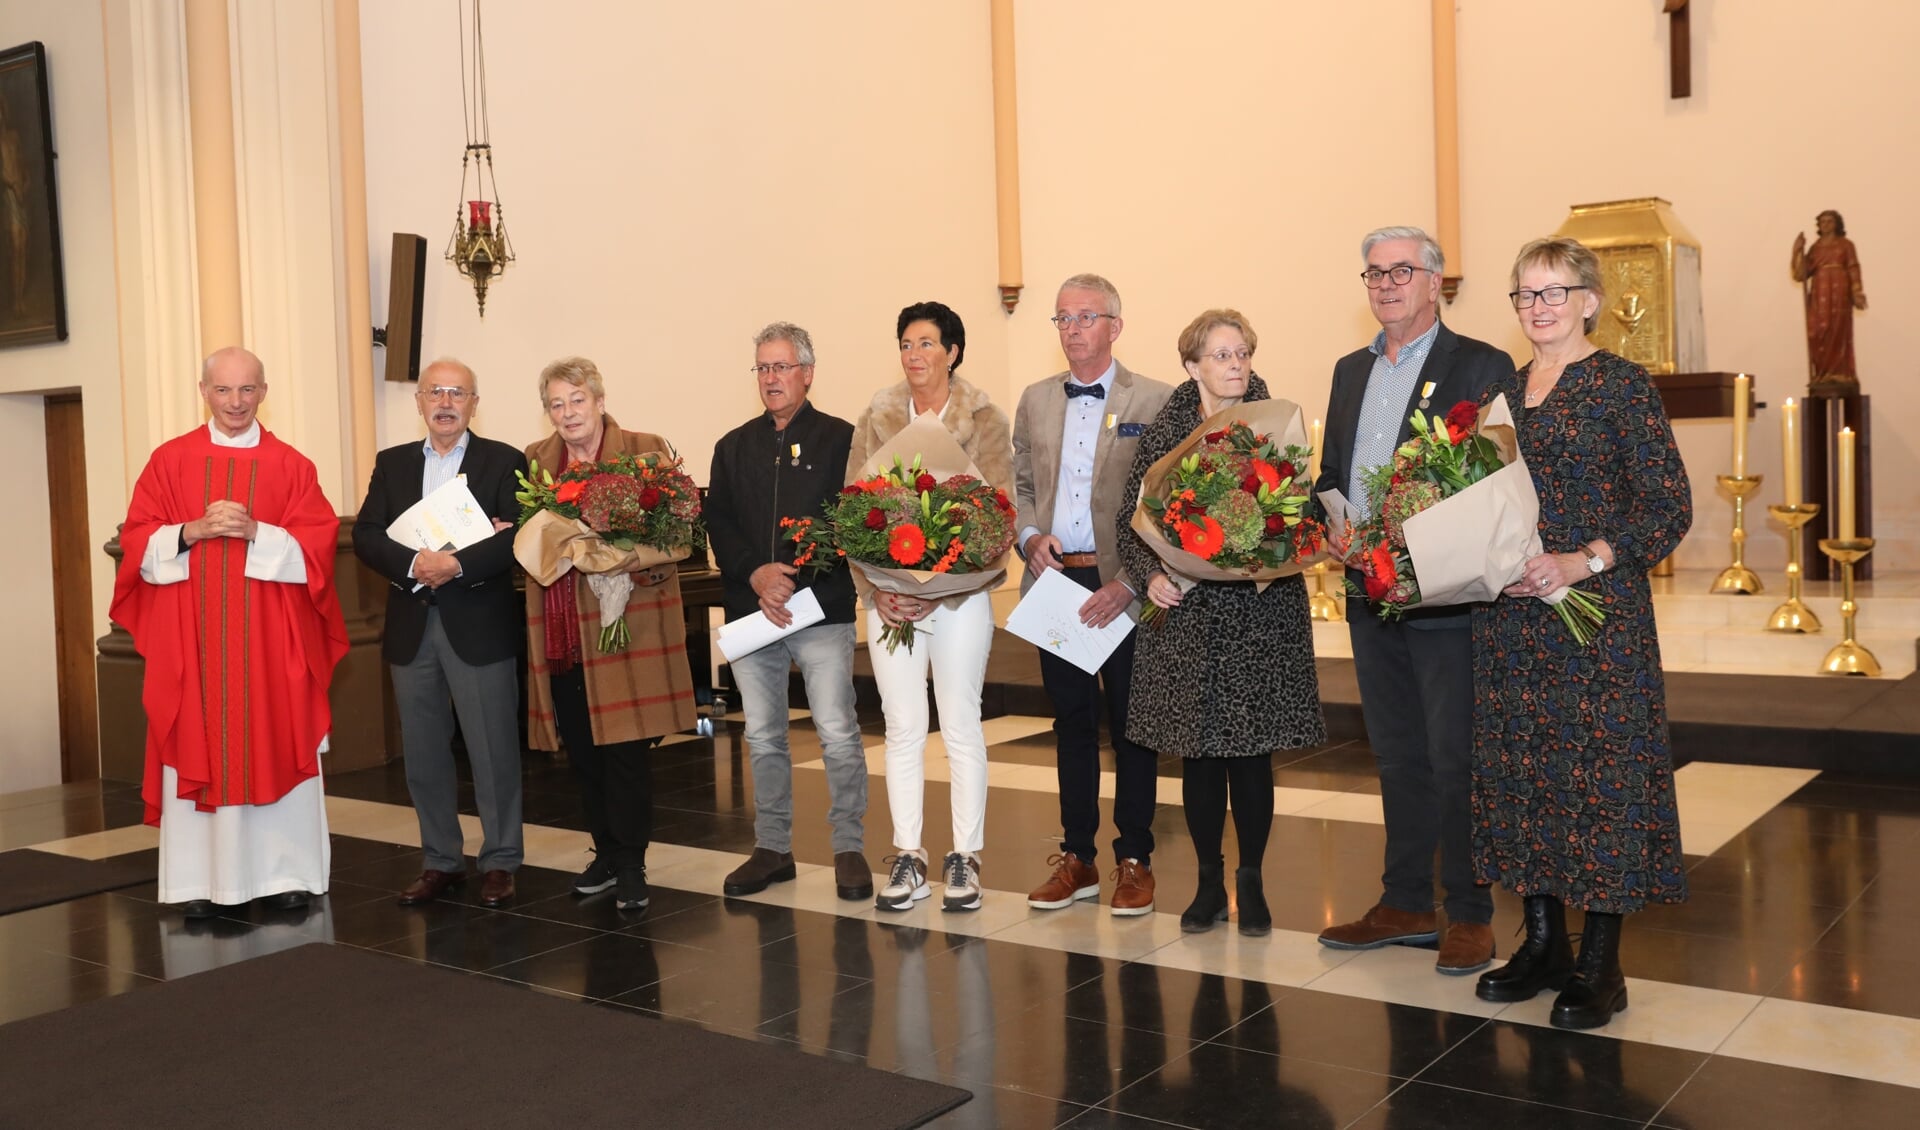 Vier koorleden zijn gehuldigd, de echtgenotes kregen de bloemen. (Foto: Harrie van der Sanden)